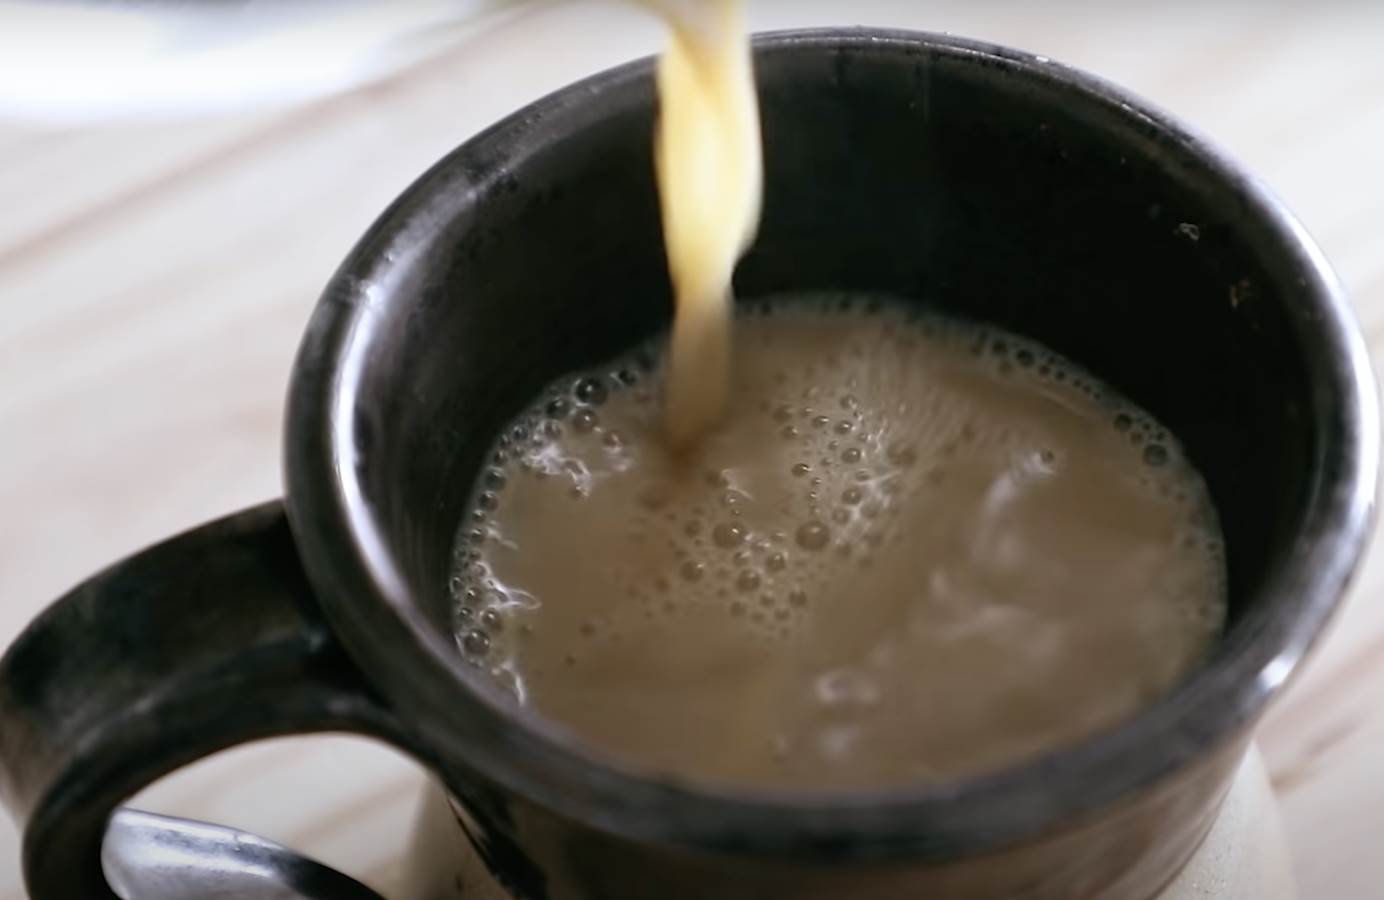  Crni čaj s mlekom i začinima dobar za cirkulaciju 